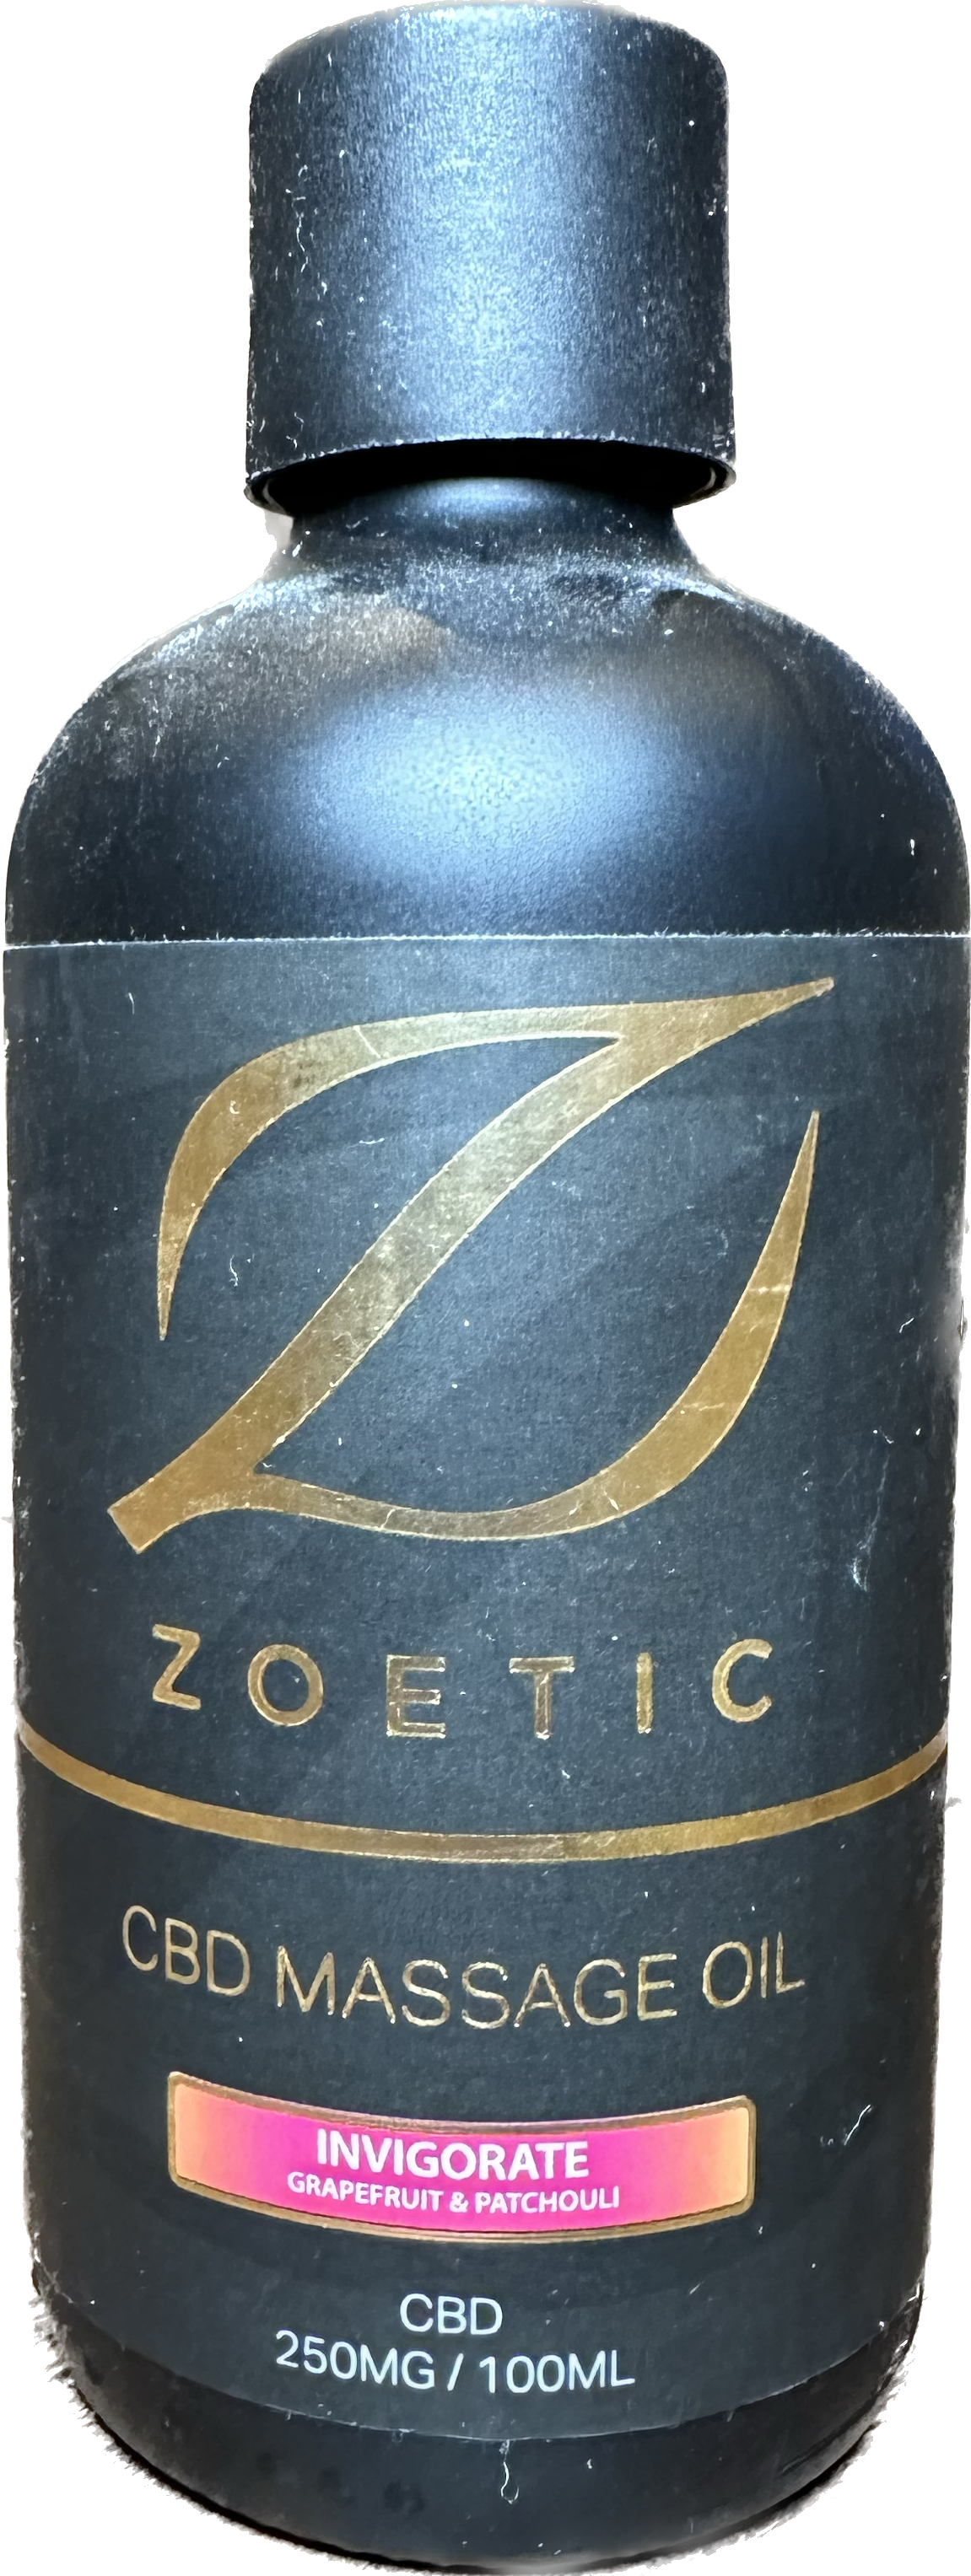 Zoetic Invigorate Massage Oil 100ml